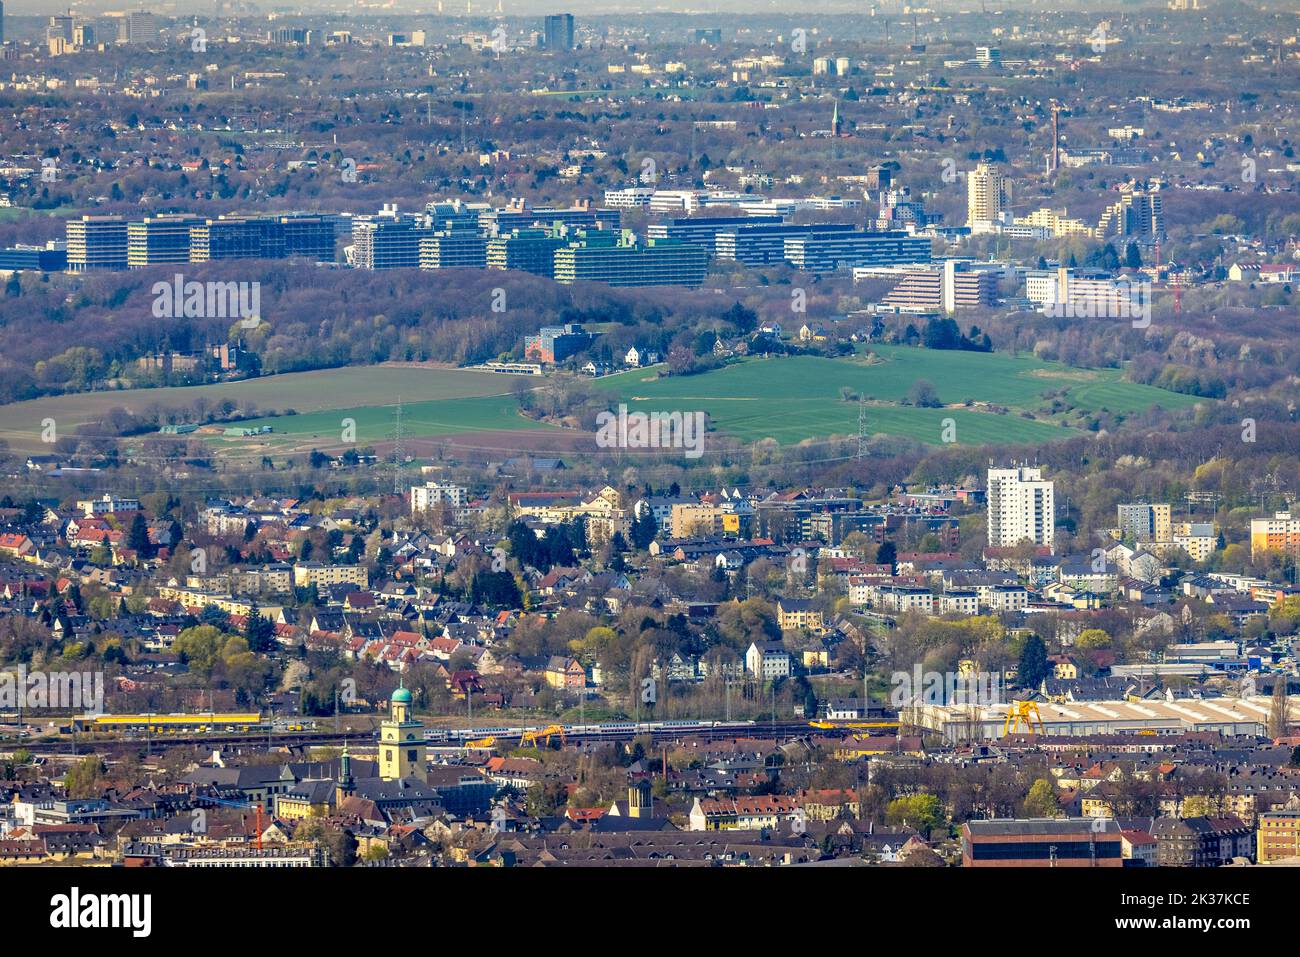 Vista aérea, el ayuntamiento de Witten y de Essen en una foto, la buena vista distante dejar que los 25 km se derritan juntos, vista del centro de la ciudad con el ayuntamiento an Foto de stock